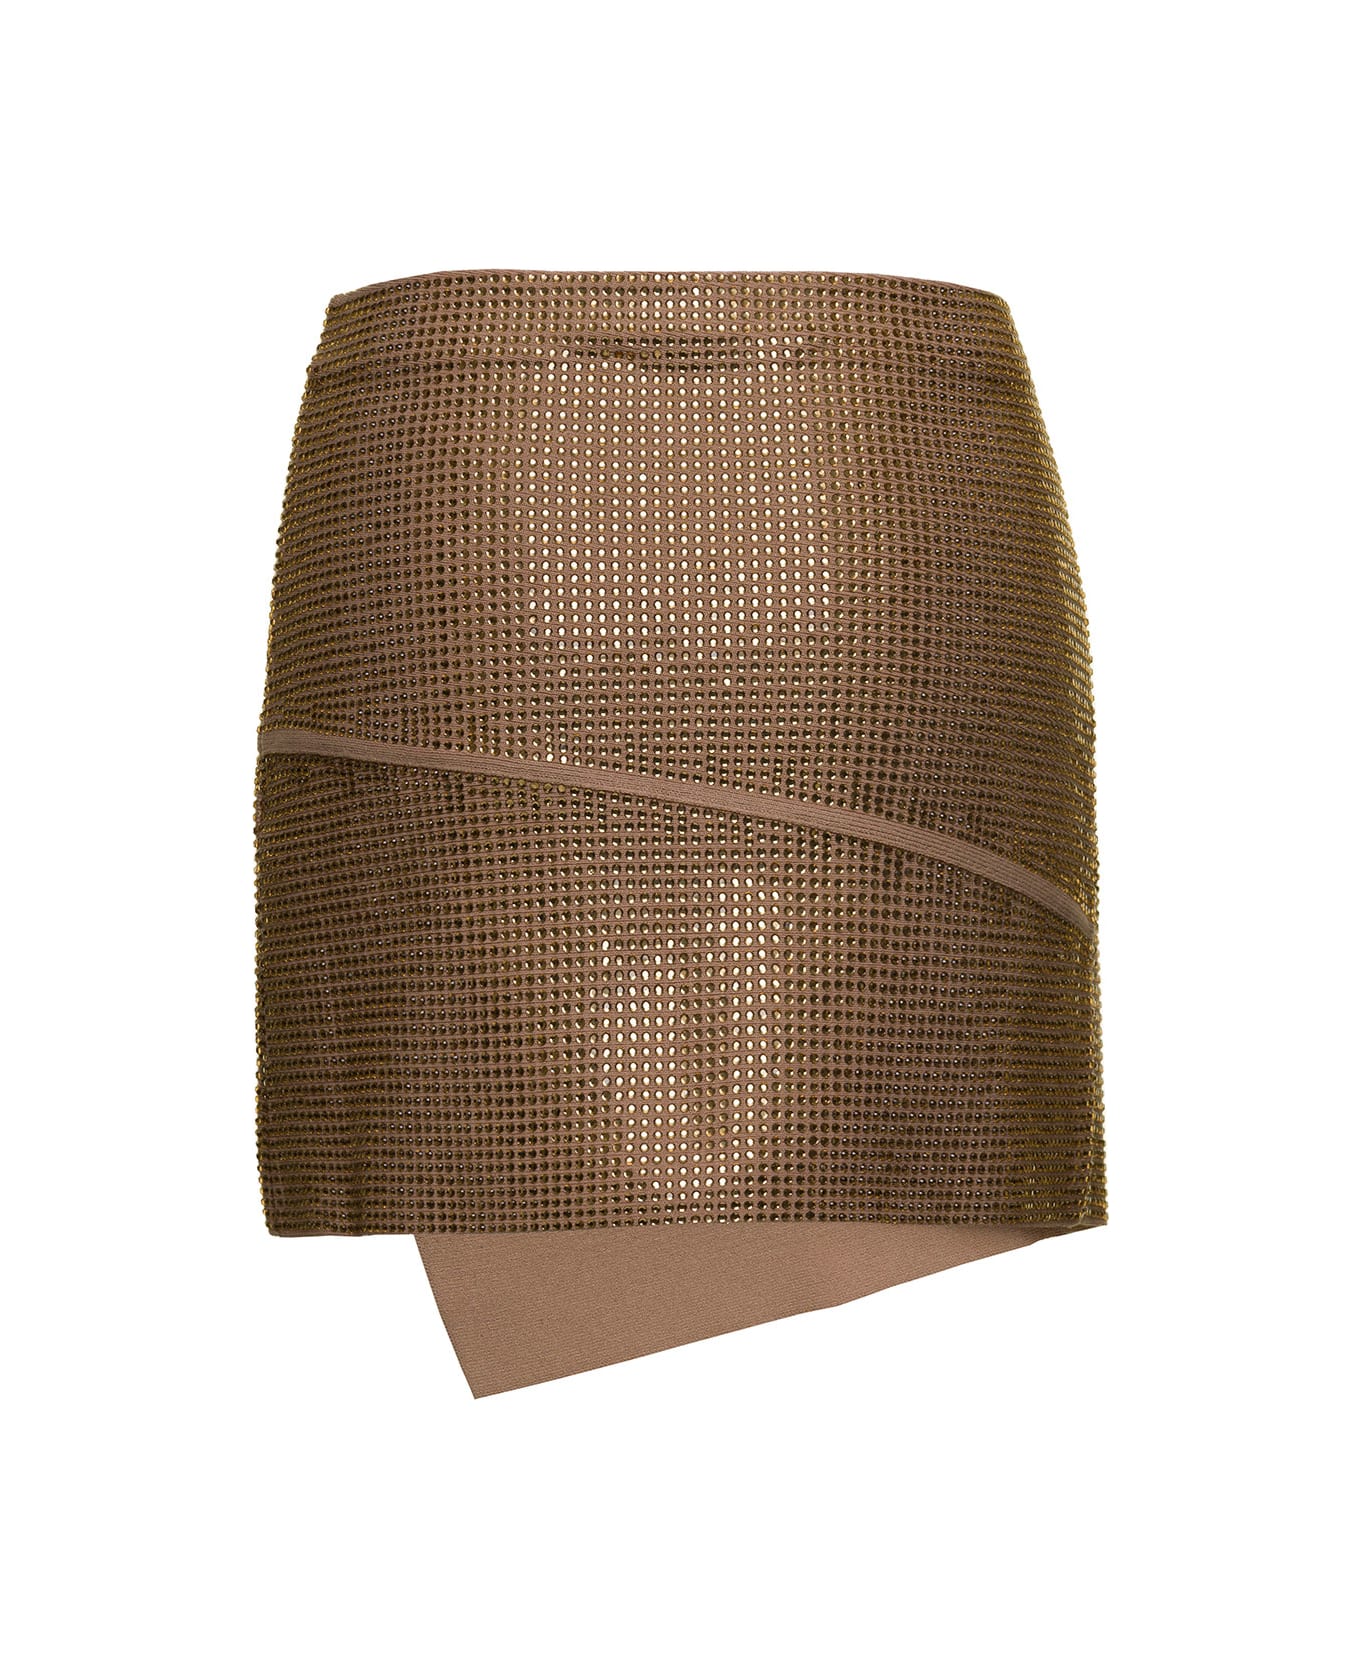 ANDREĀDAMO Full Strass A-line Panels Mini Skirt - Beige